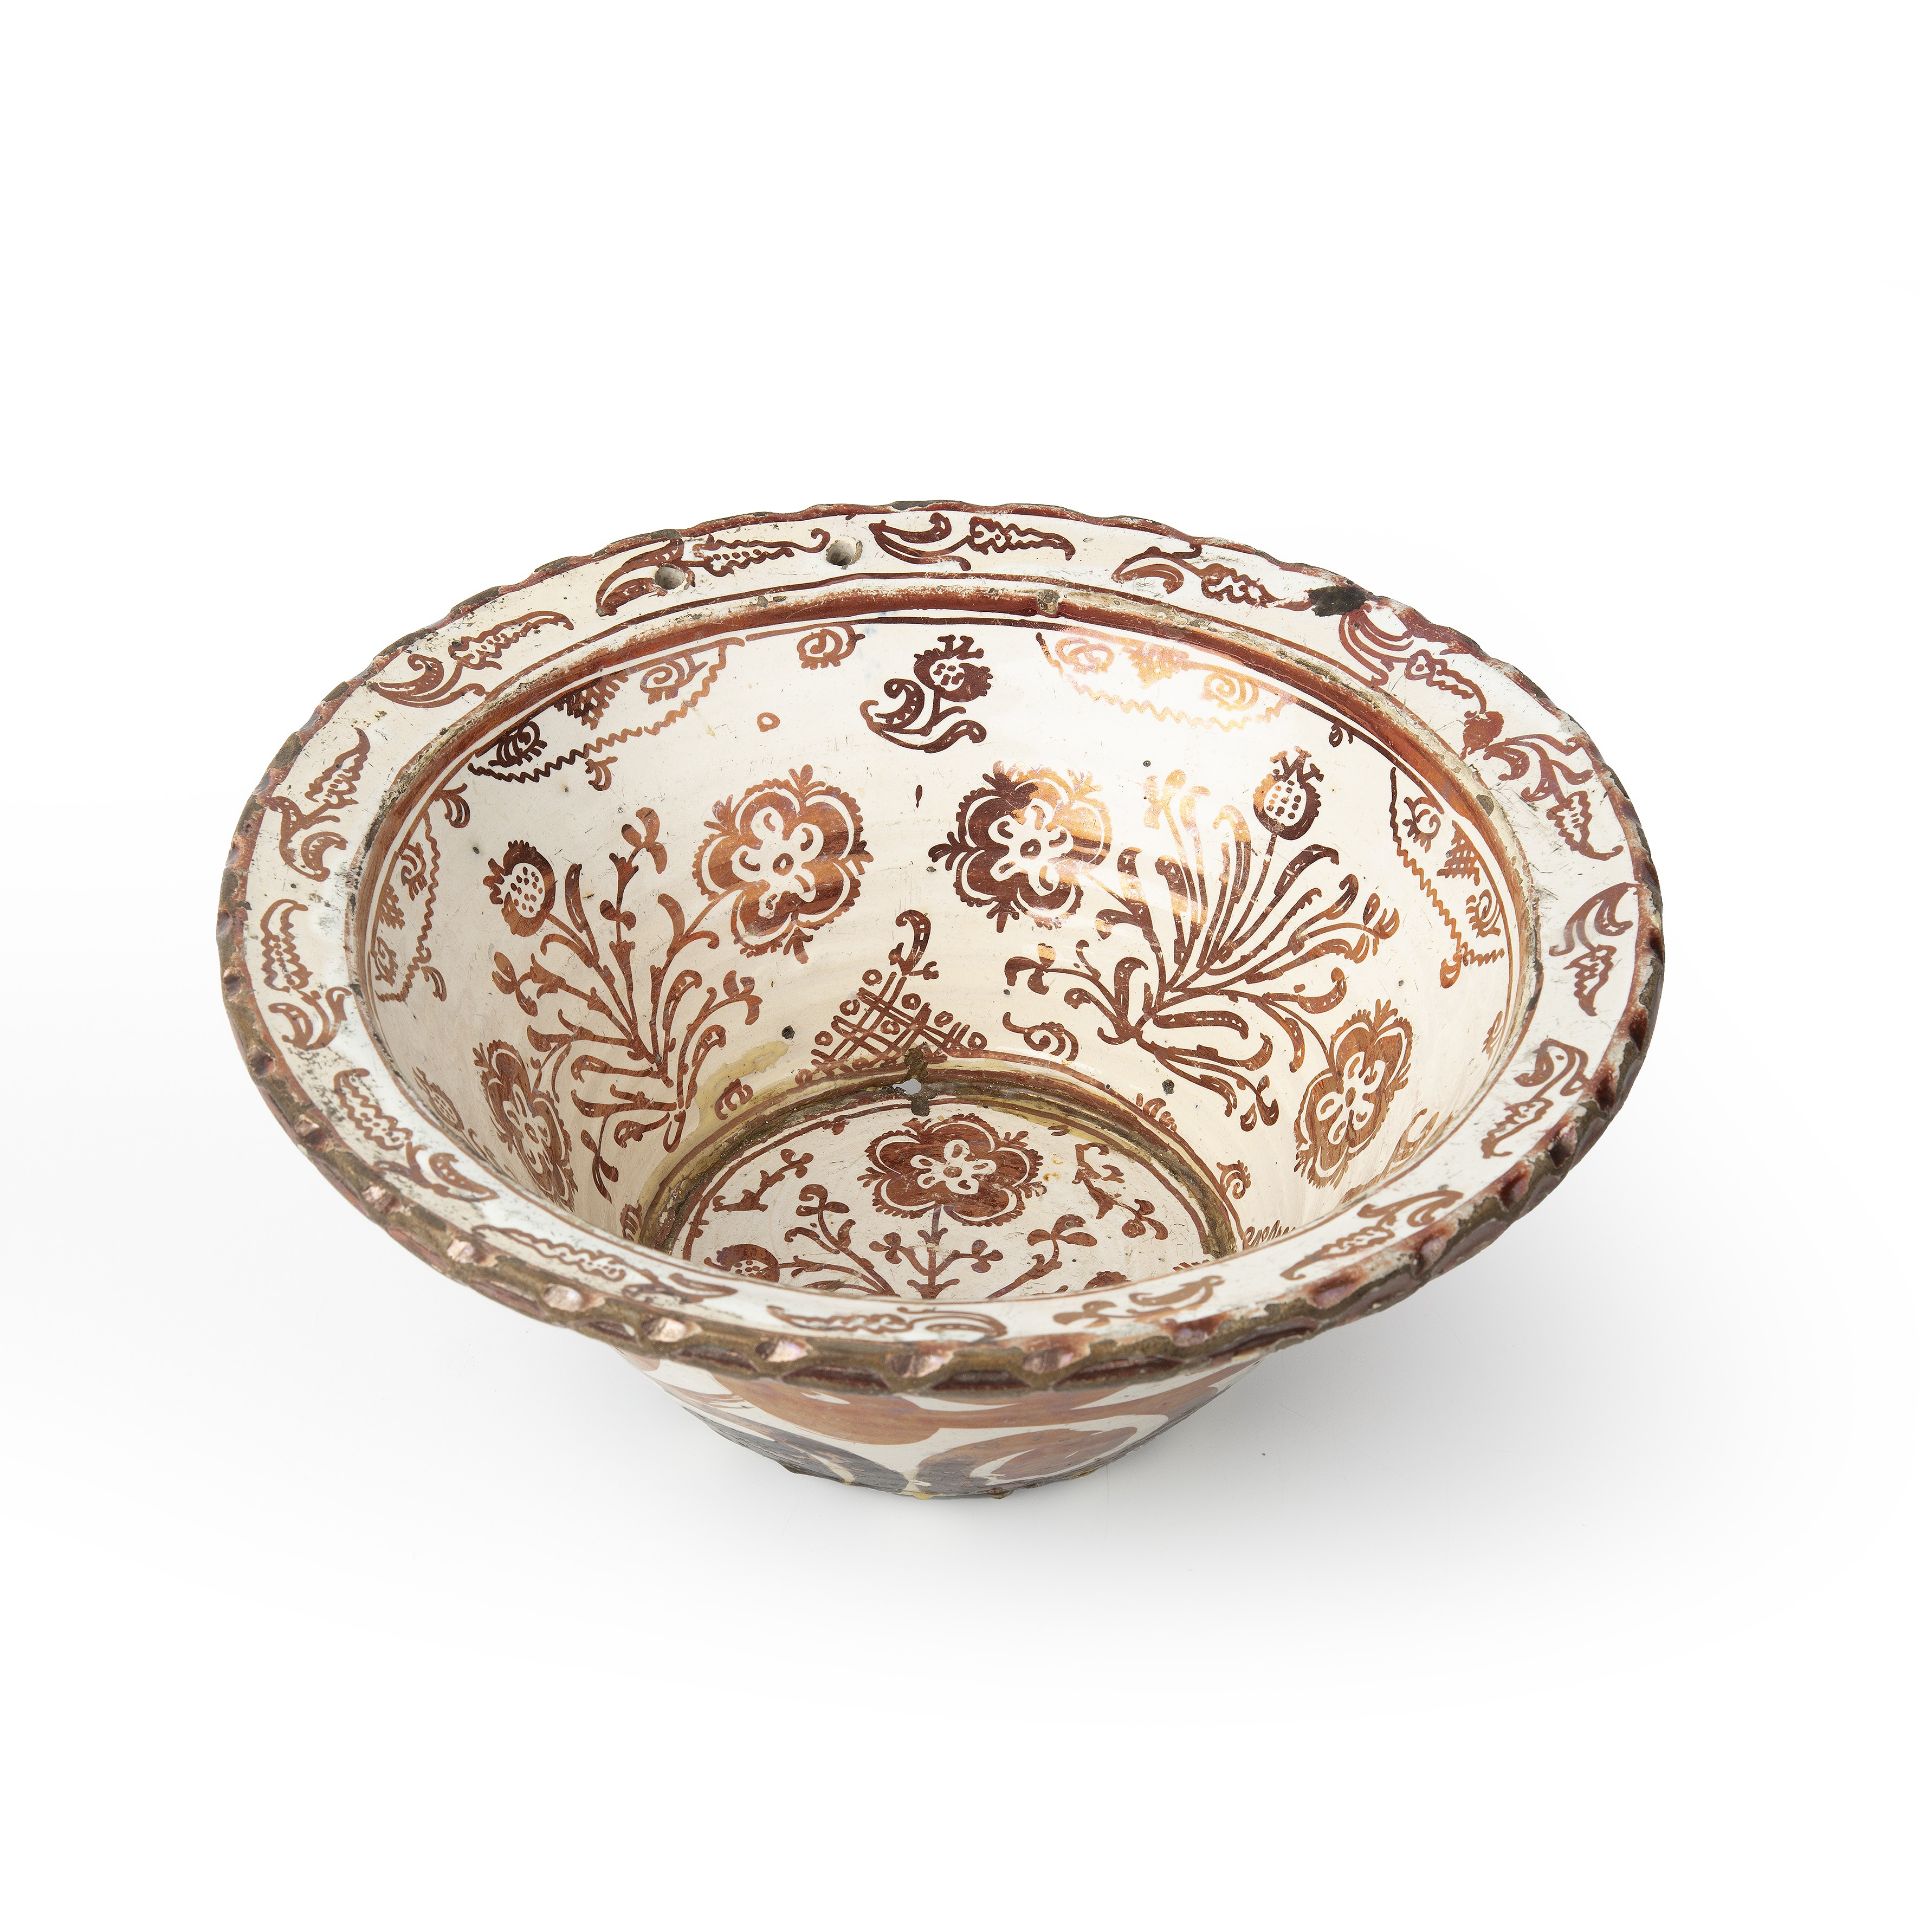 A 17th/18th century Hispano-Moresque copper lustre bowl with foliate decoration, 30cm diameter 12.